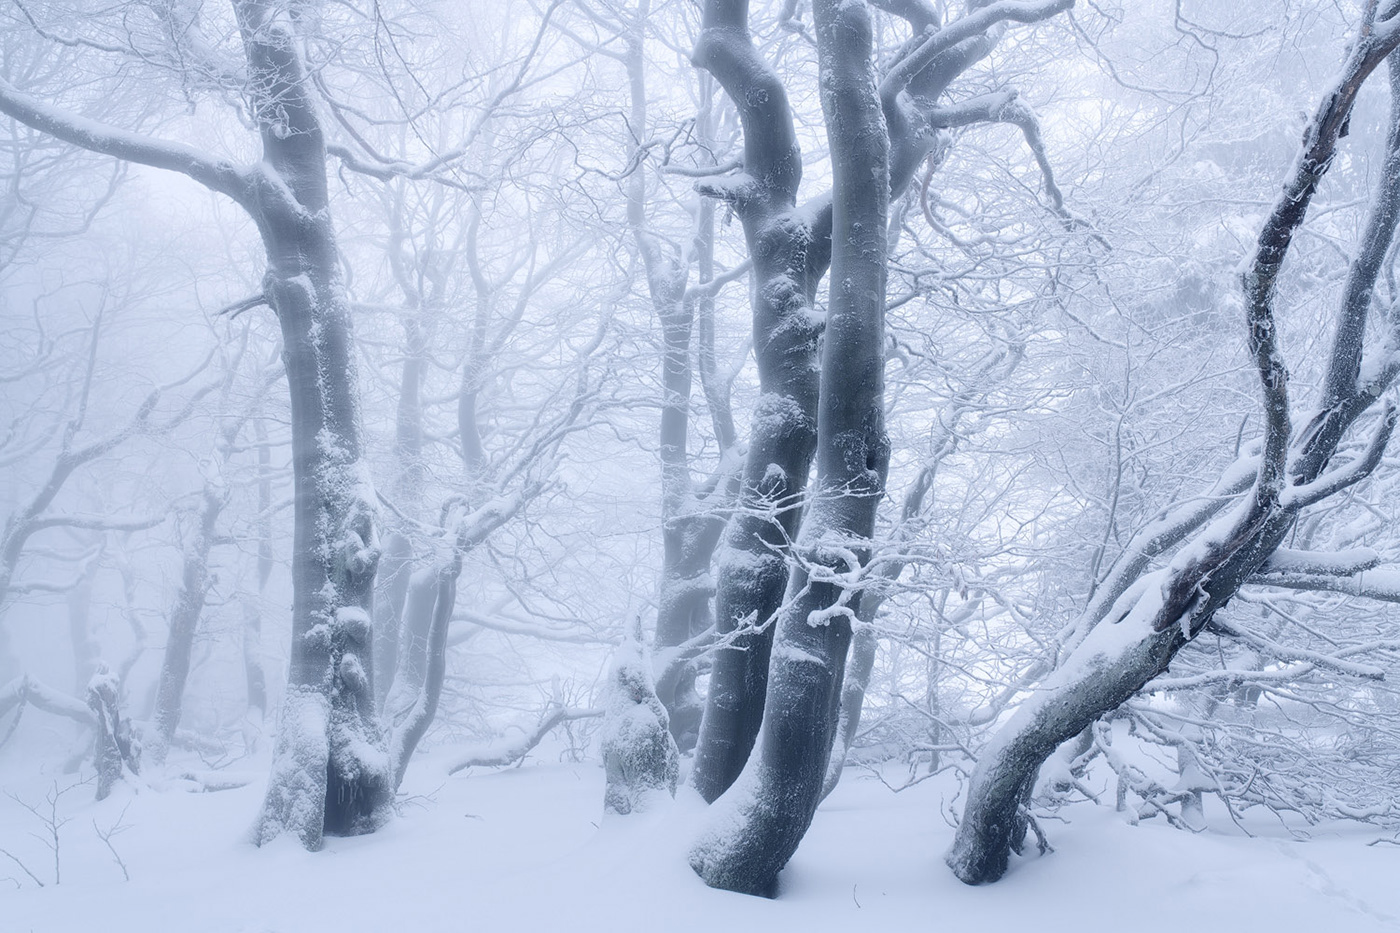 Beech enchanted fairytale forest frozen hoarfrost mist snow Treescape winter